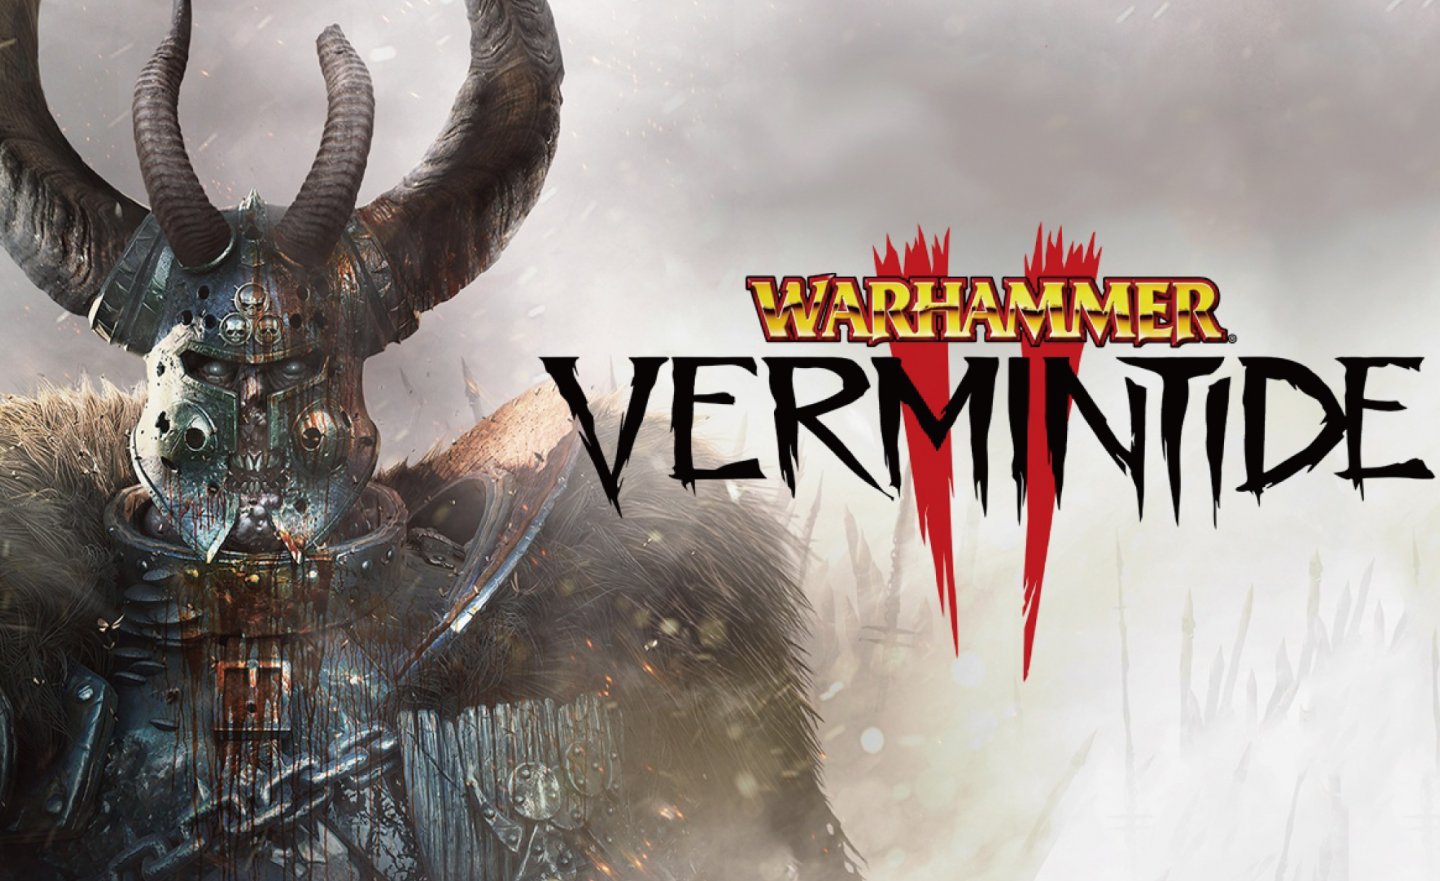 【限時免費】登入 Steam 領取《Warhammer: Vermintide 2 戰鎚：終結時刻》，11 月 8 日上午 2:00 前即可永久保留